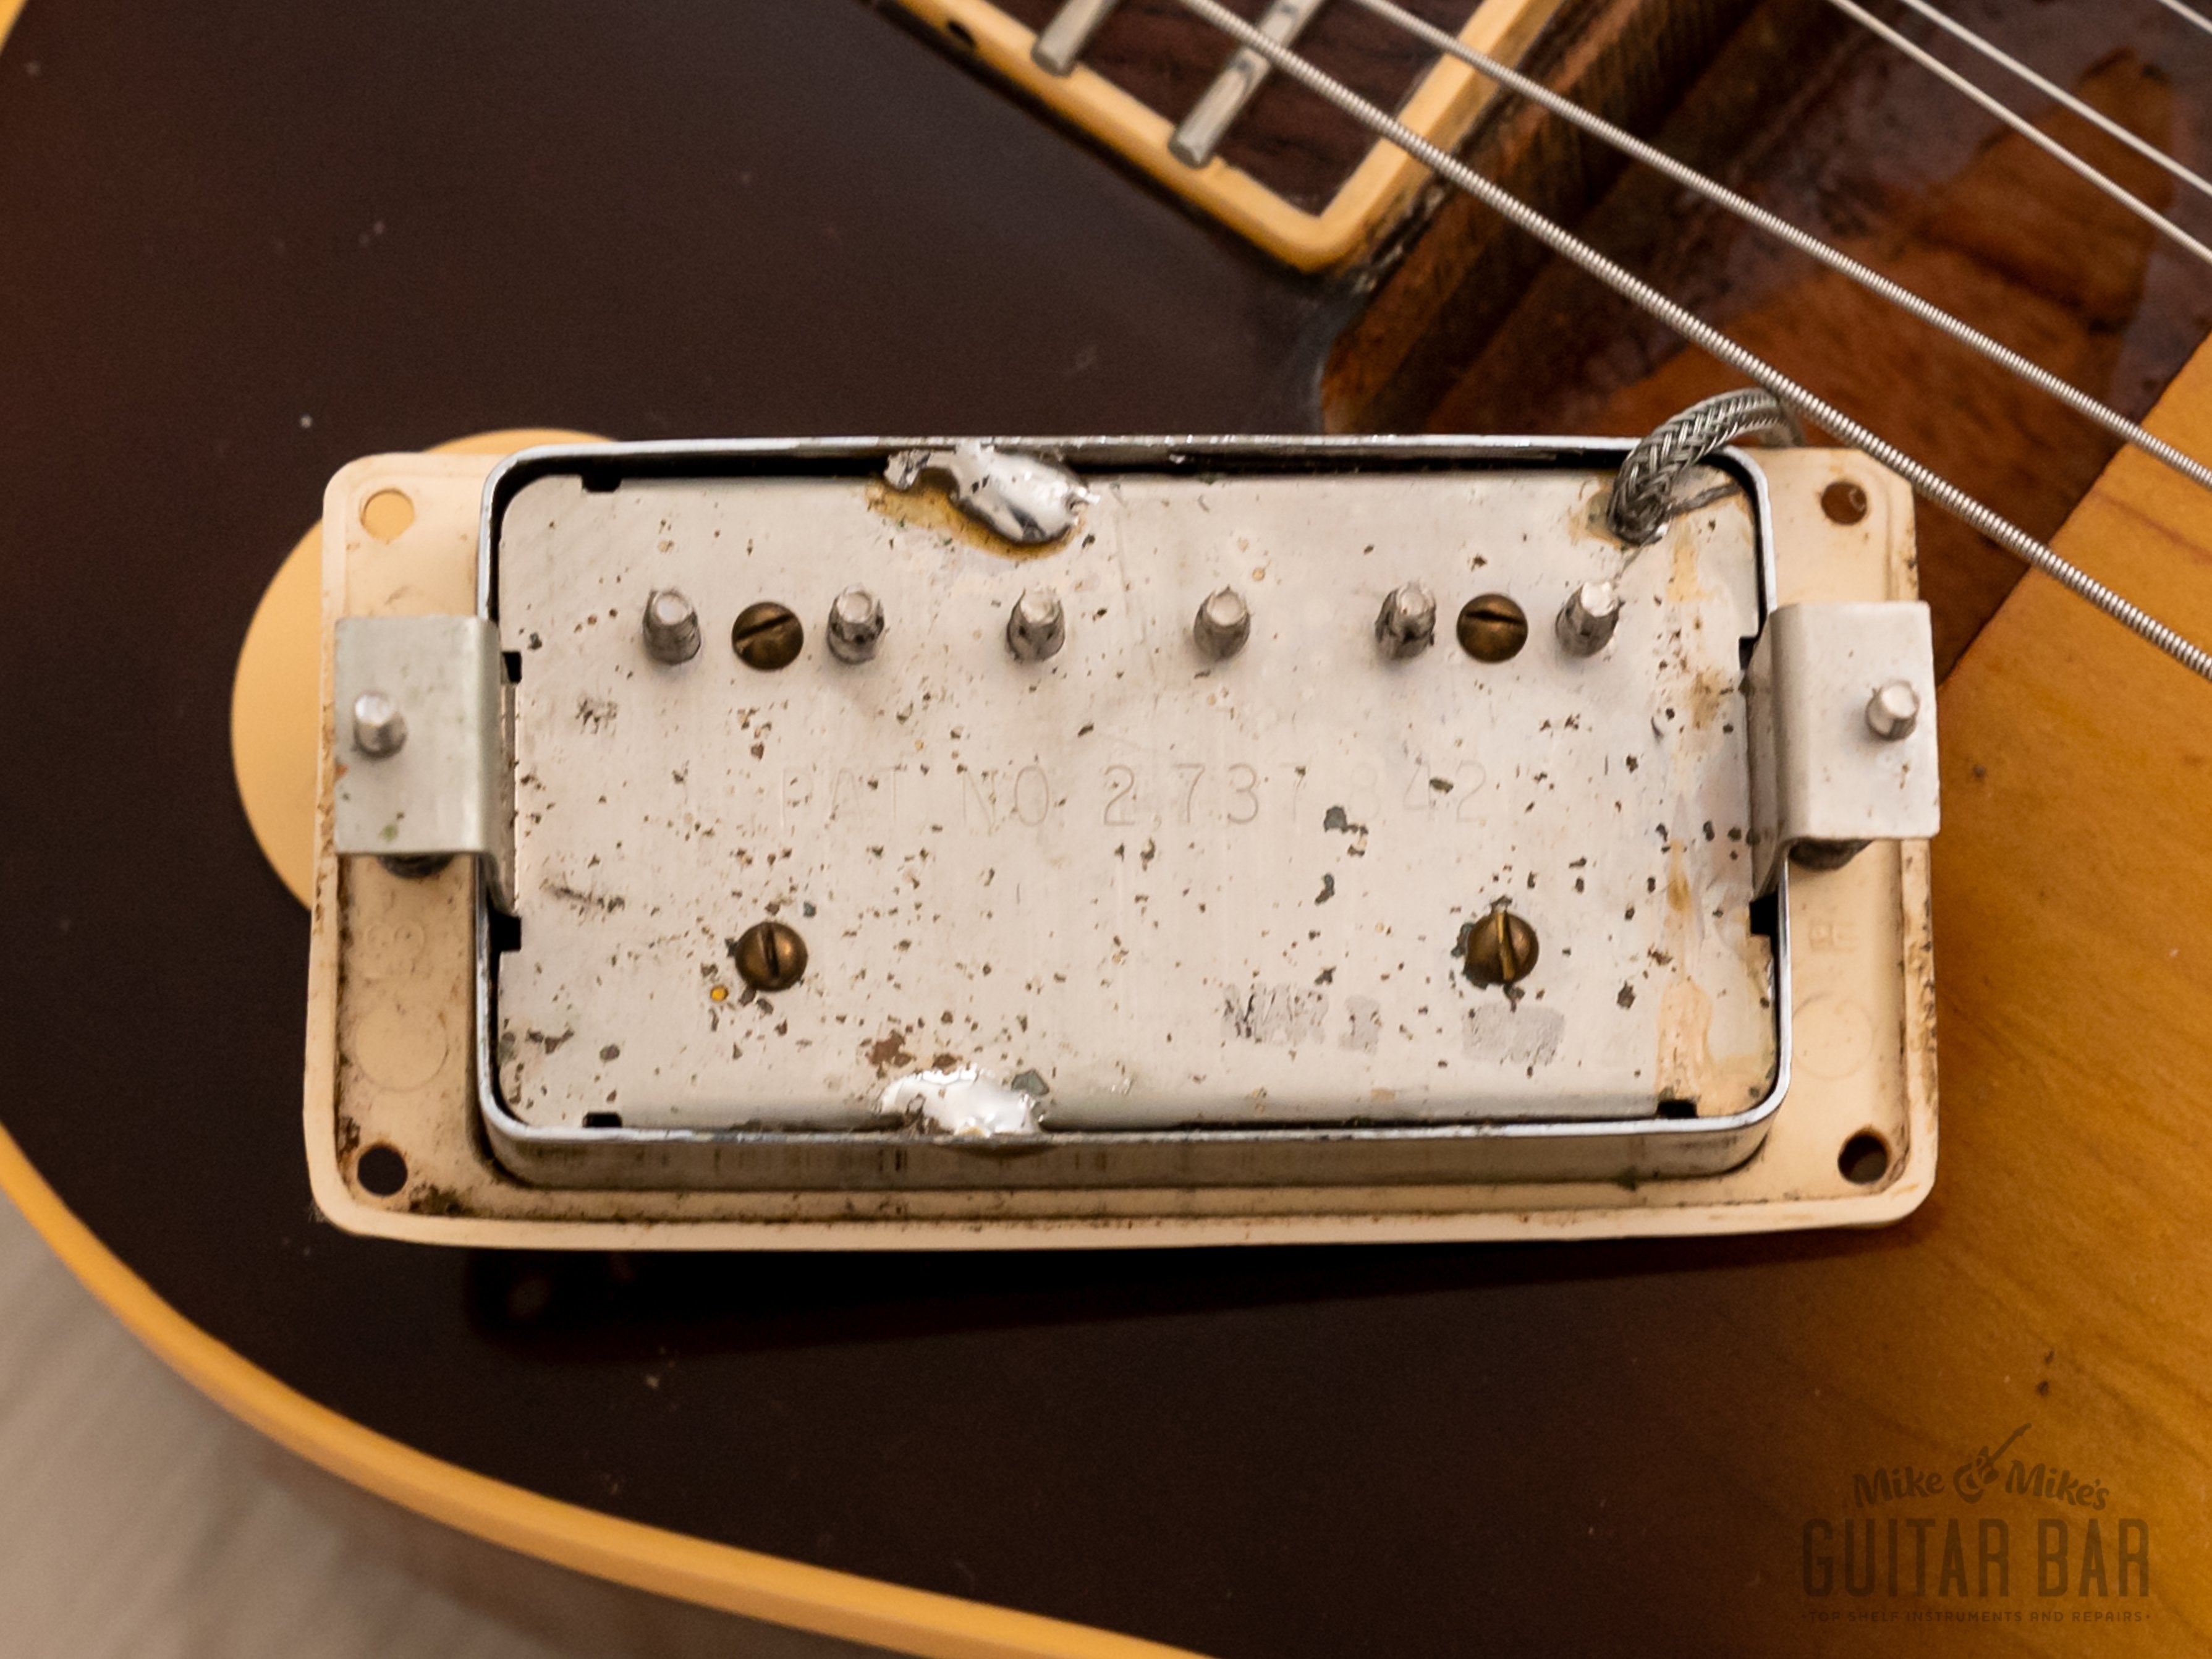 1977 Gibson Les Paul Standard Vintage Guitar Tobacco Sunburst w/ Case